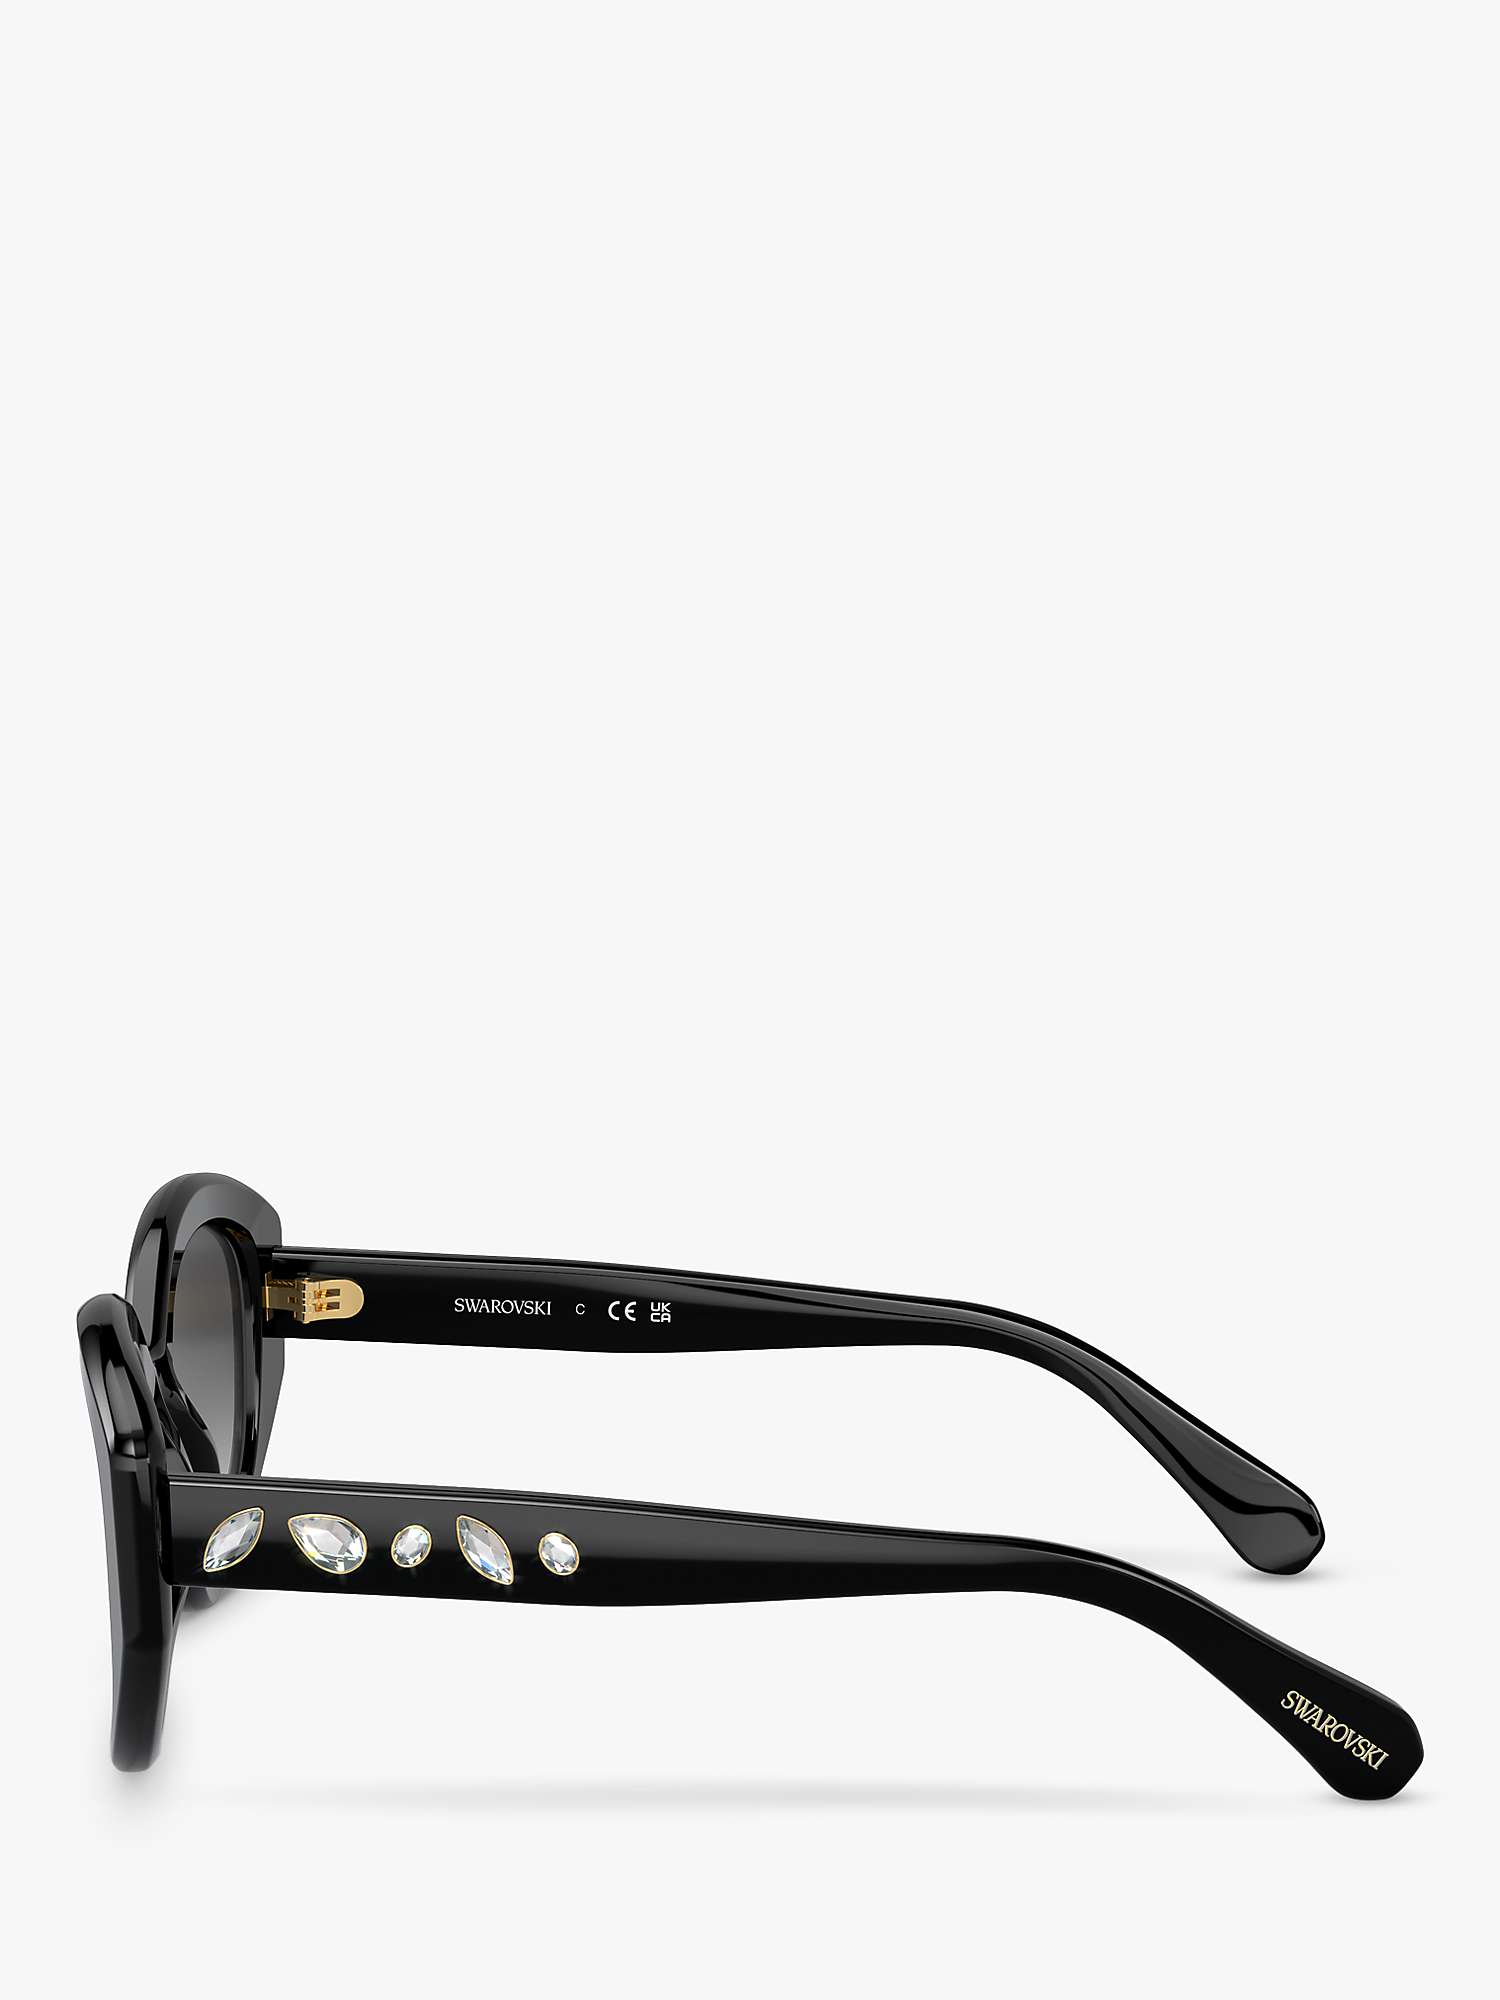 Buy Swarovski SK6005 Women's Embellished Irregular Sunglasses, Black/Grey Gradient Online at johnlewis.com